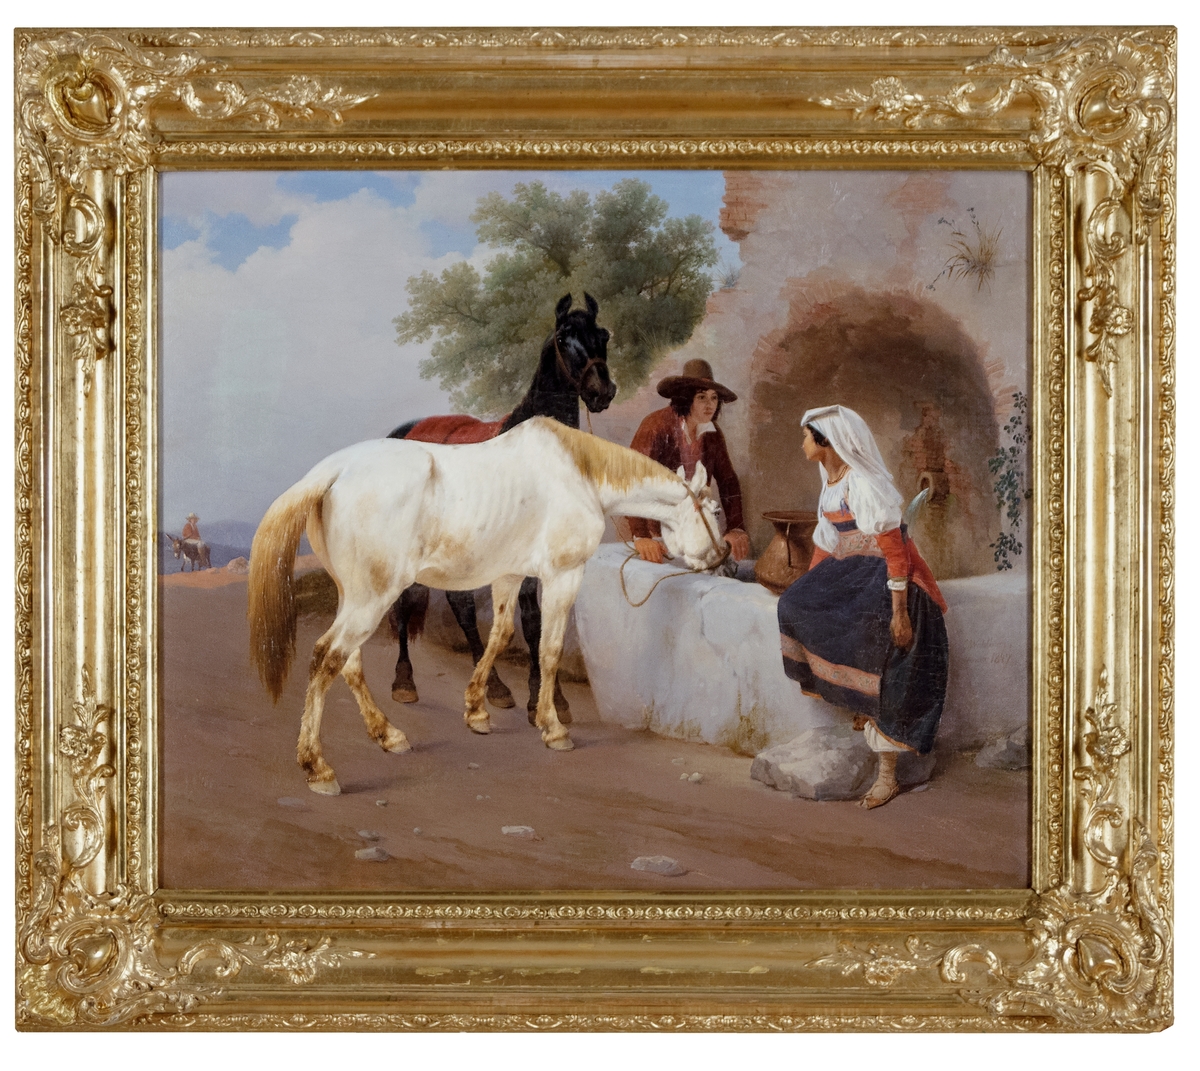 En man vattnar en vit och en svart häst  vid en brunn. En kvinna i folklig dräkt med kopparspann sitter på brunnskarets kant. Fonden ljust molnig himmel. Förgylld ram.